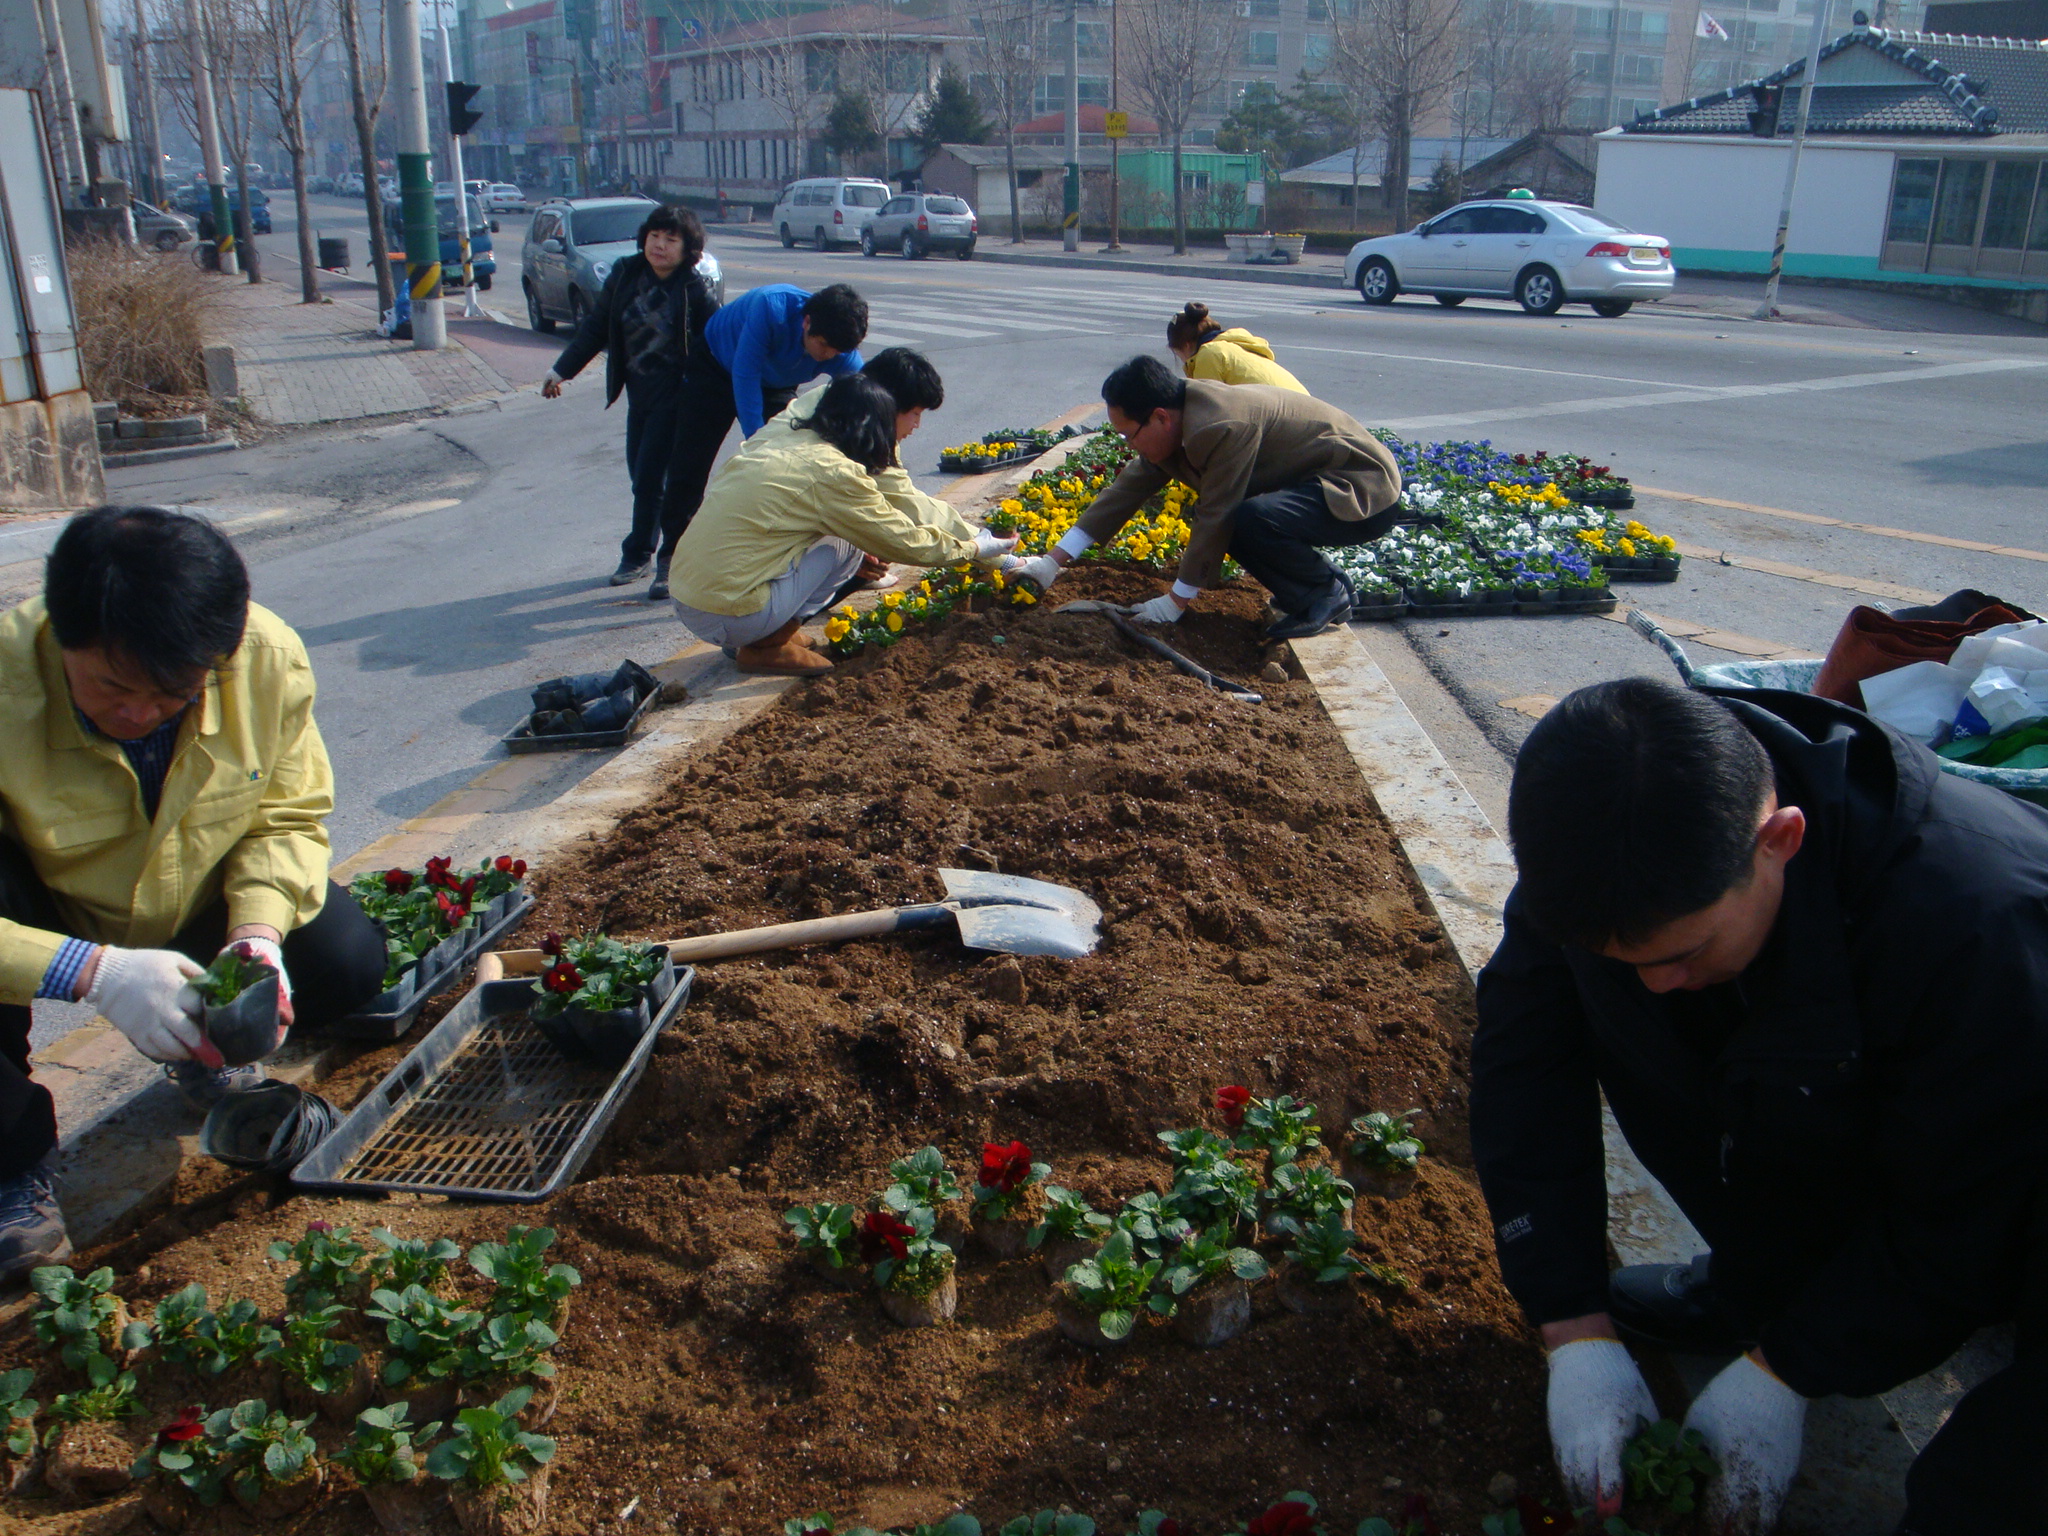 2011 식목일 행사 및 새봄맞이 도로변 꽃길조성(4)